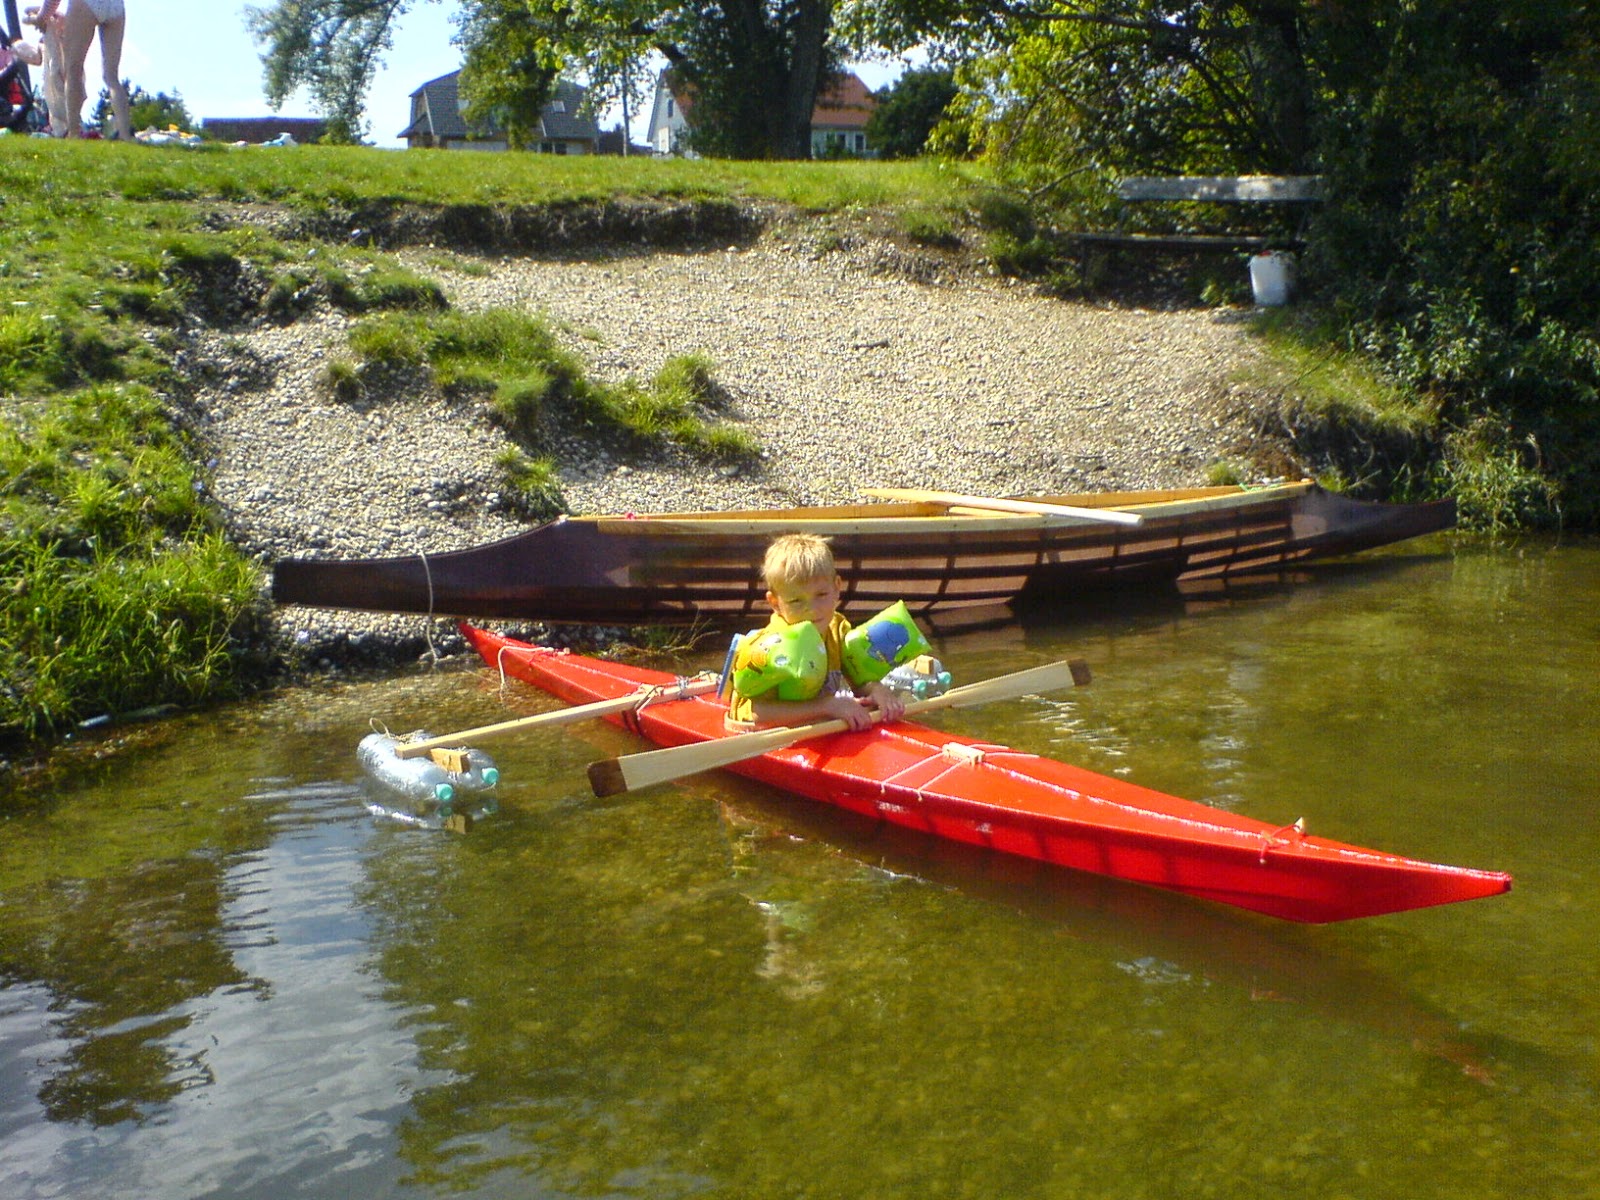 Winner-Kayaks: September 2014